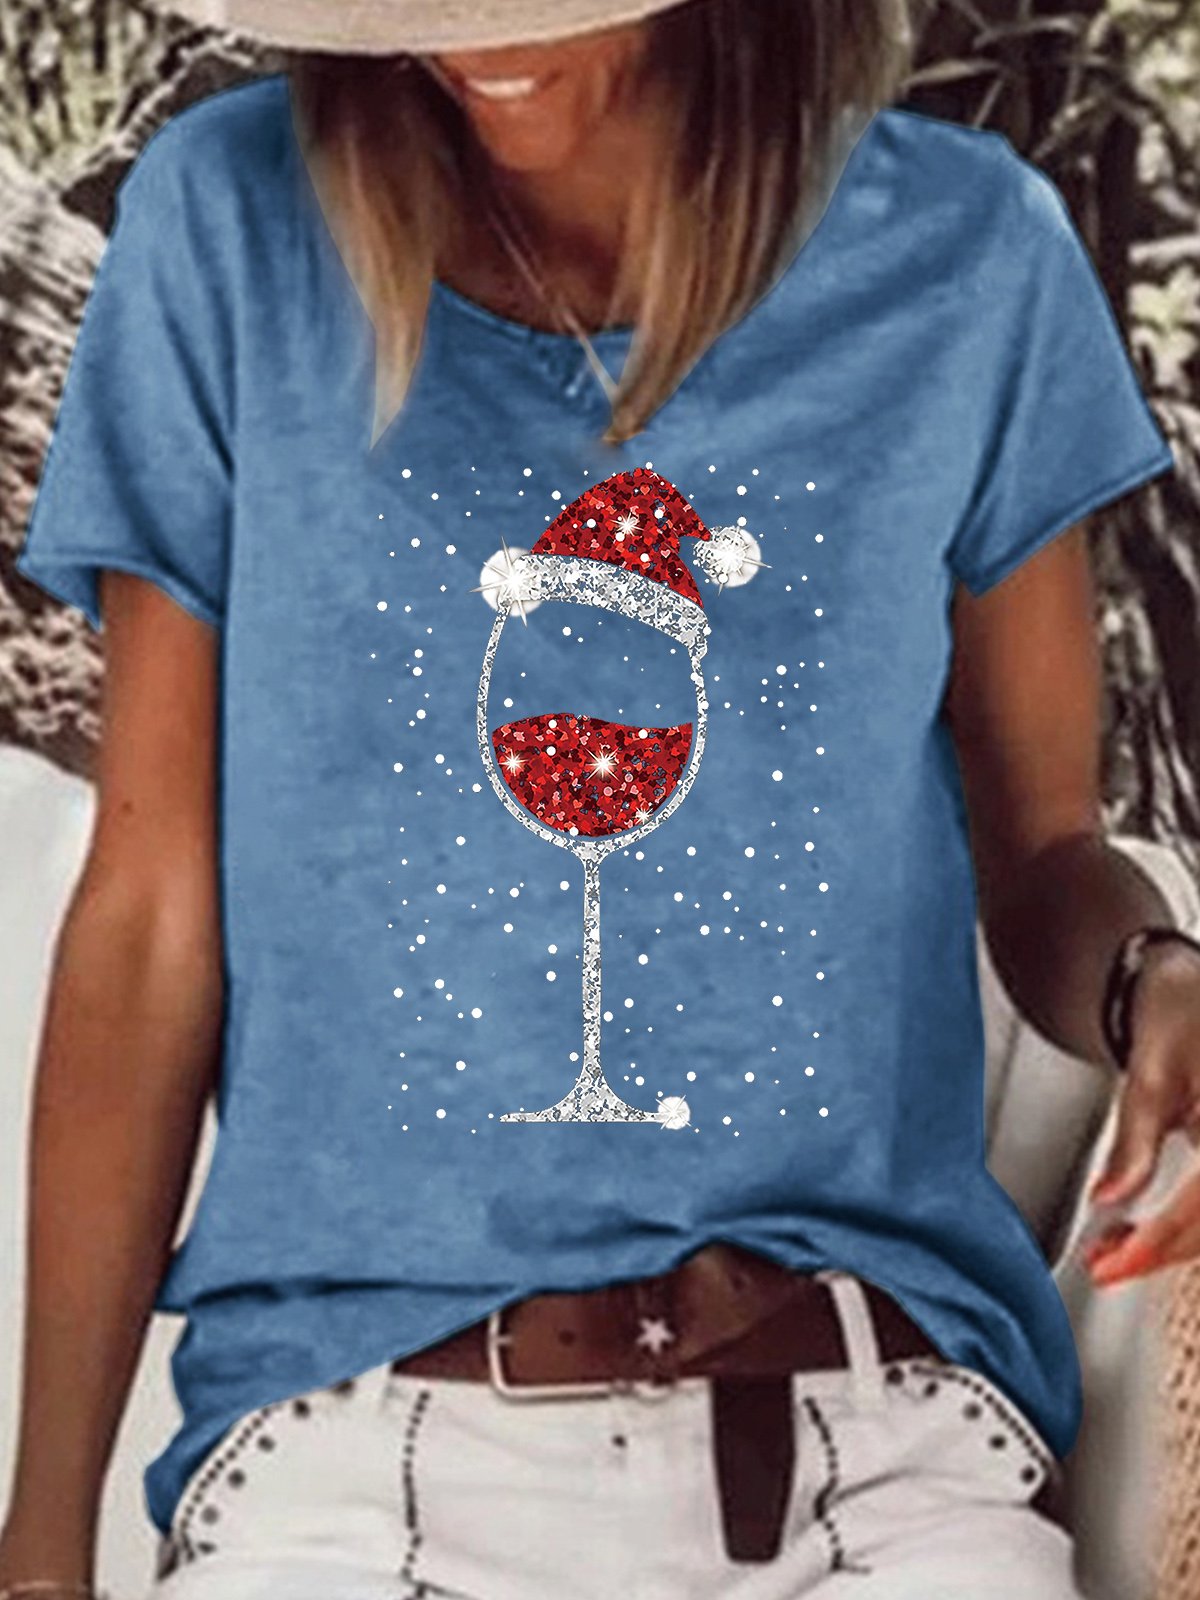 Women's Christmas Wine Glasses Light Bling Print Casual T-shirt